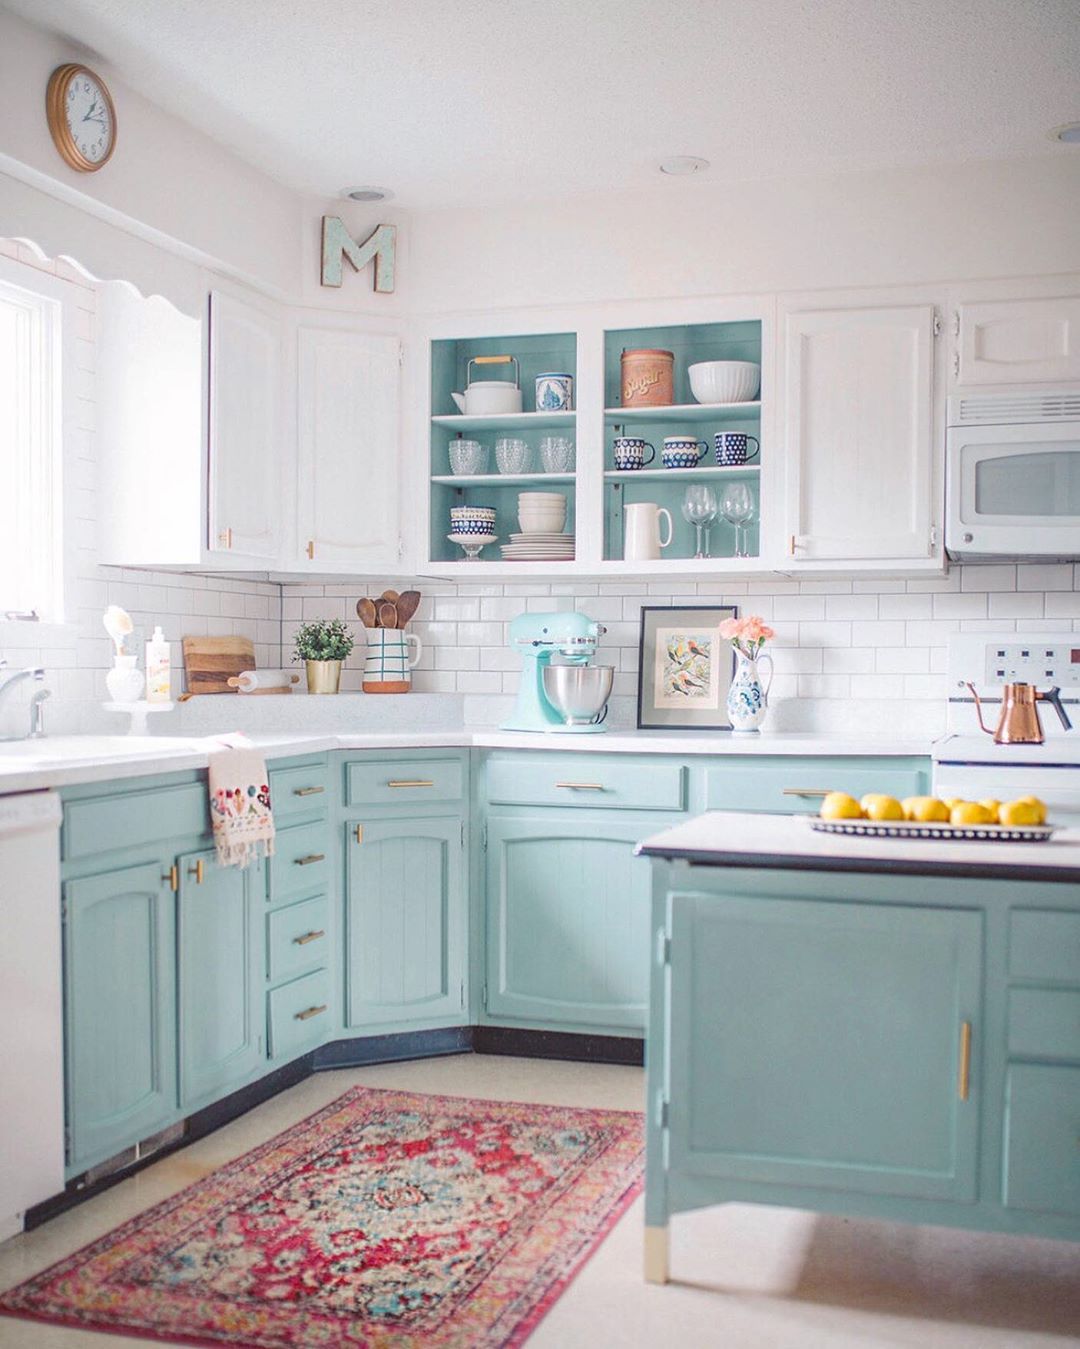 Những ý tưởng thiết kế siêu dễ giúp bạn sở hữu căn bếp đẹp mơ màng ấn tượng - Ảnh 2.